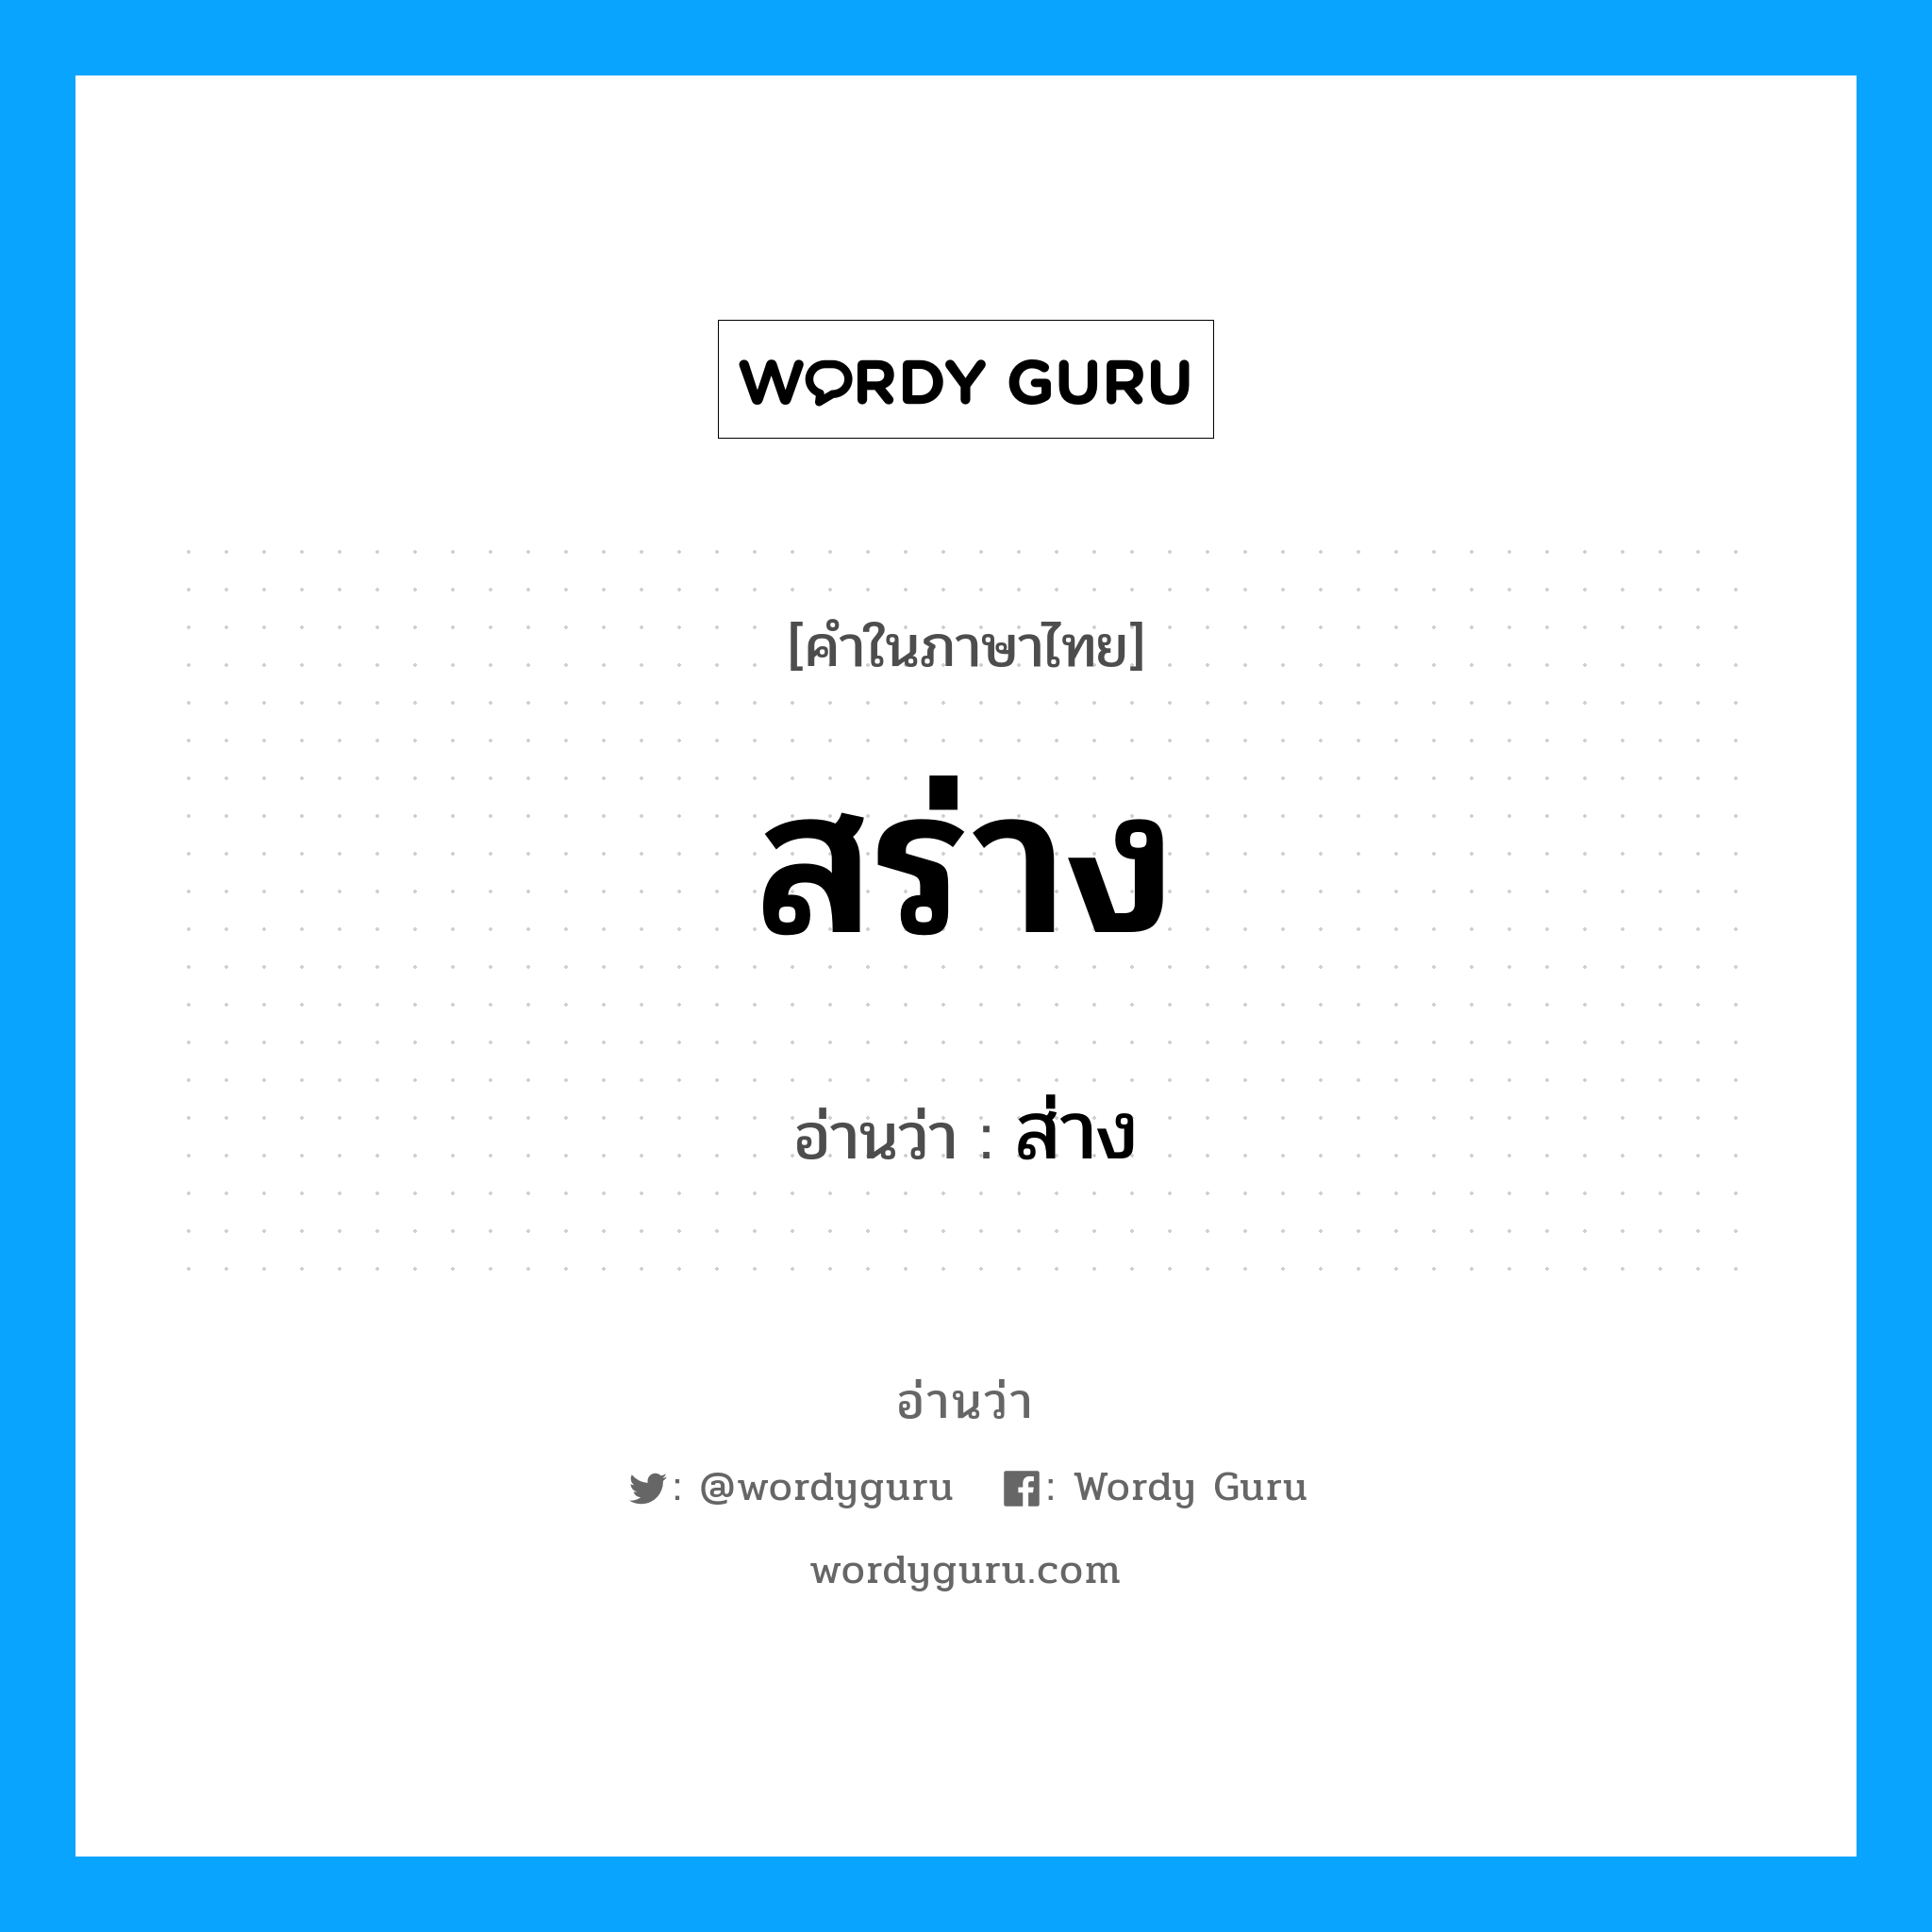 ส่าง เป็นคำอ่านของคำไหน?, คำในภาษาไทย ส่าง อ่านว่า สร่าง